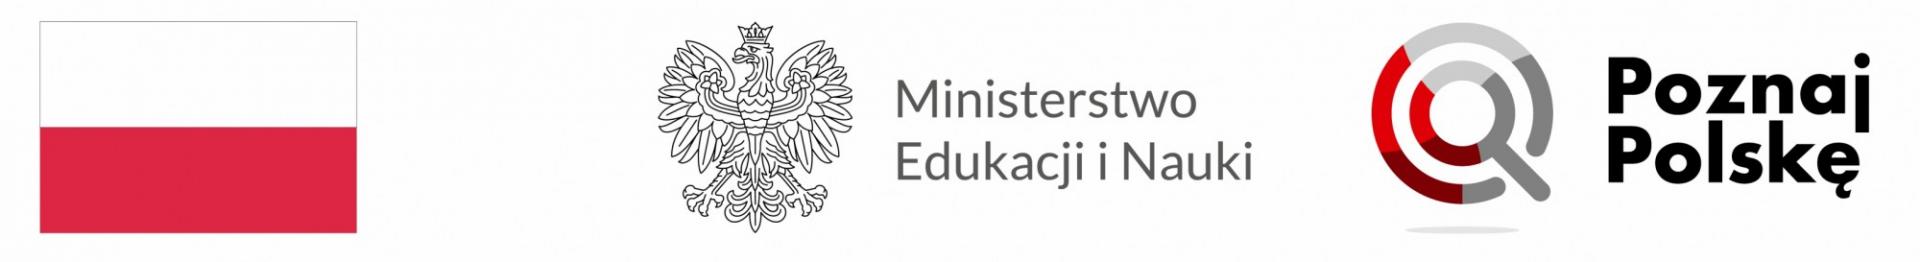 Powiat Malborski pozyskał dofinansowanie z przedsięwzięcia Ministra Edukacji i Nauki p.n.  “Poznaj Polskę”